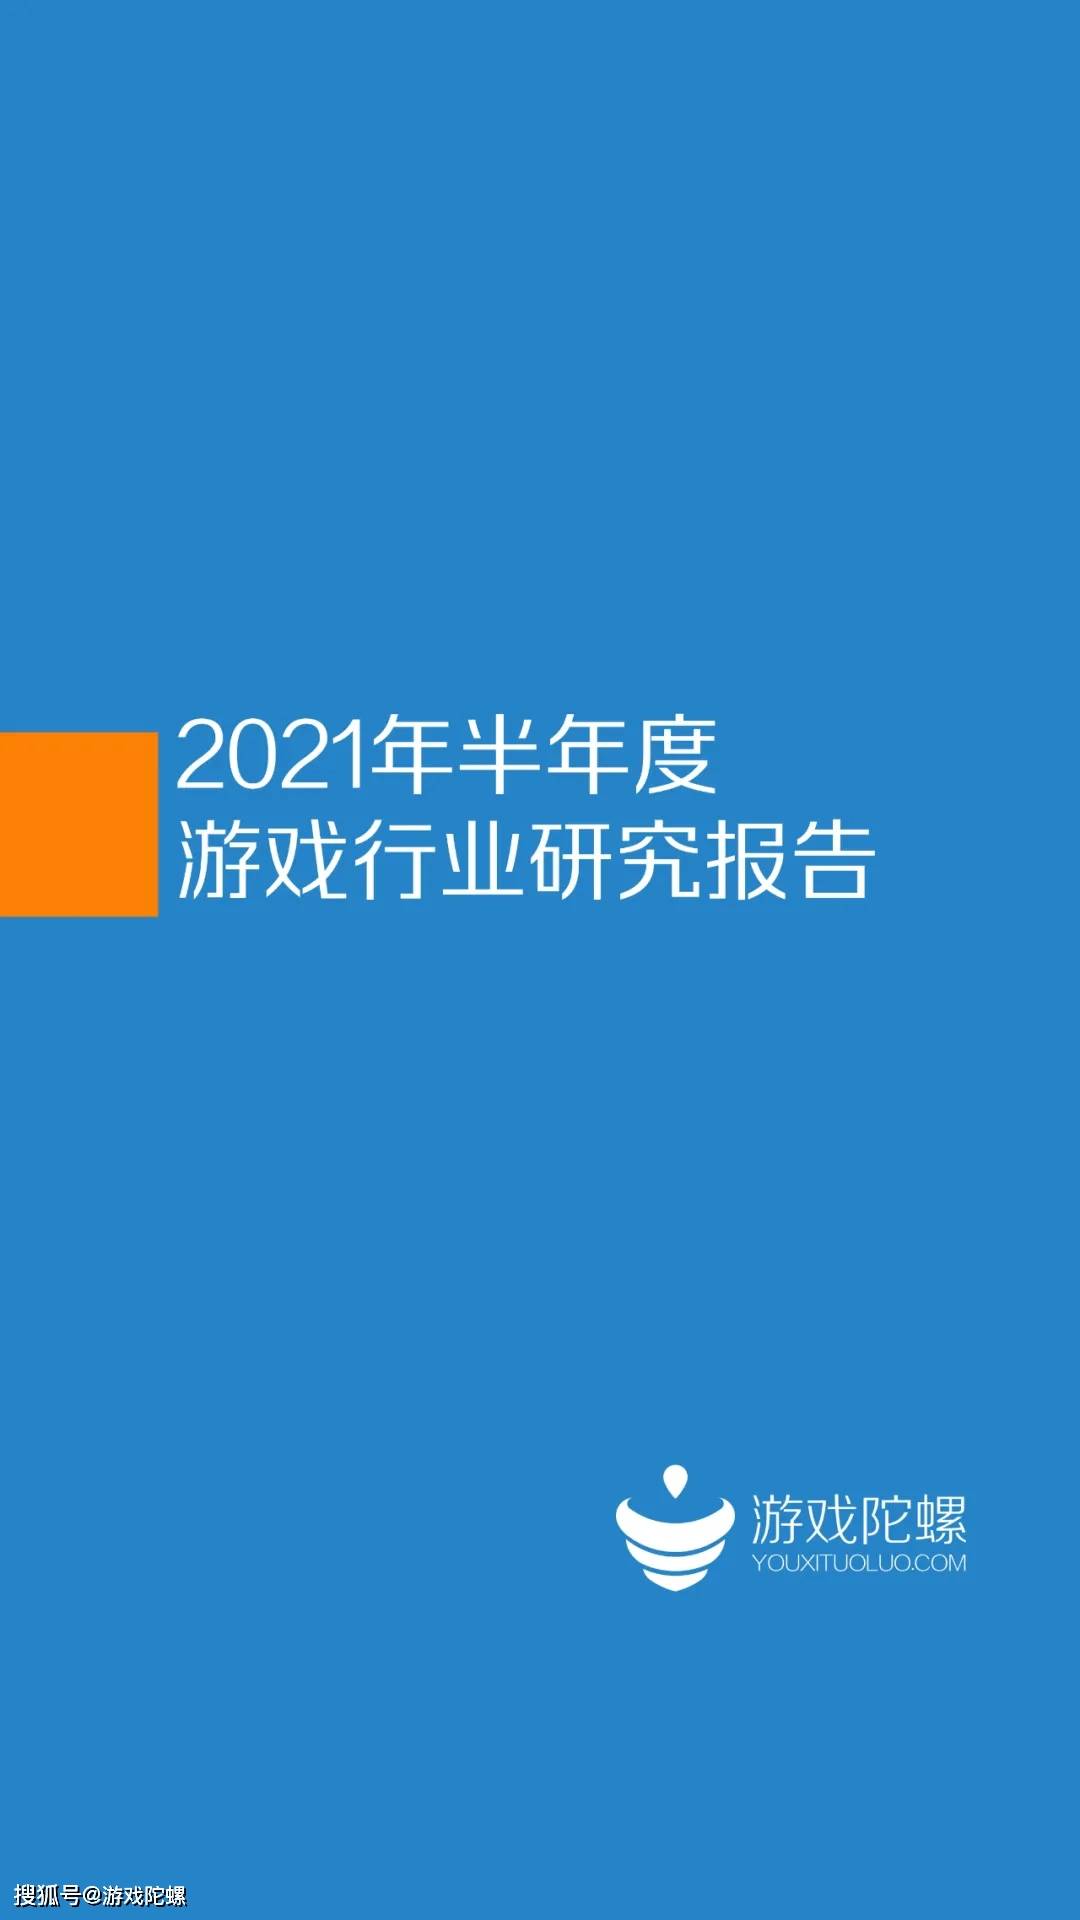 刘威|2021年半年度游戏行业报告 I 游戏陀螺